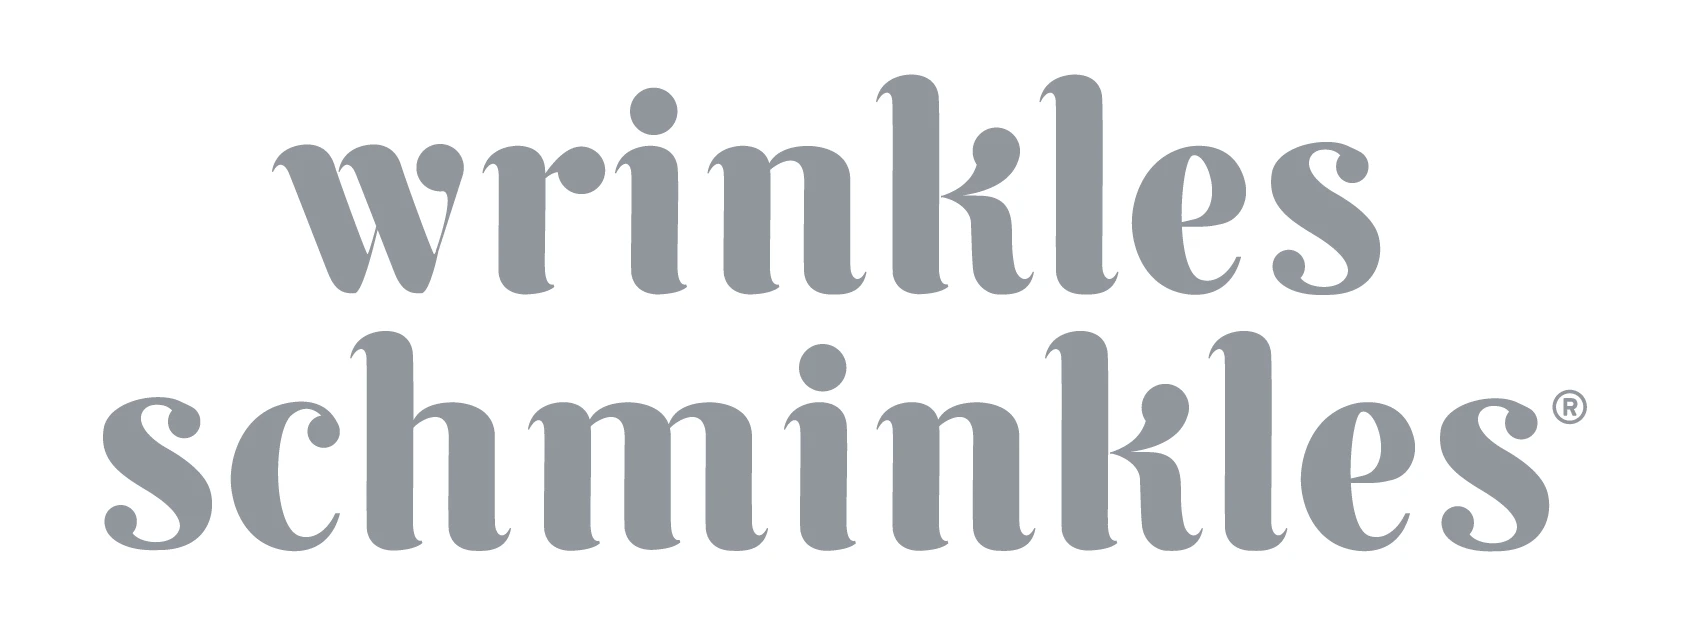 (c) Wrinklesschminkles.com